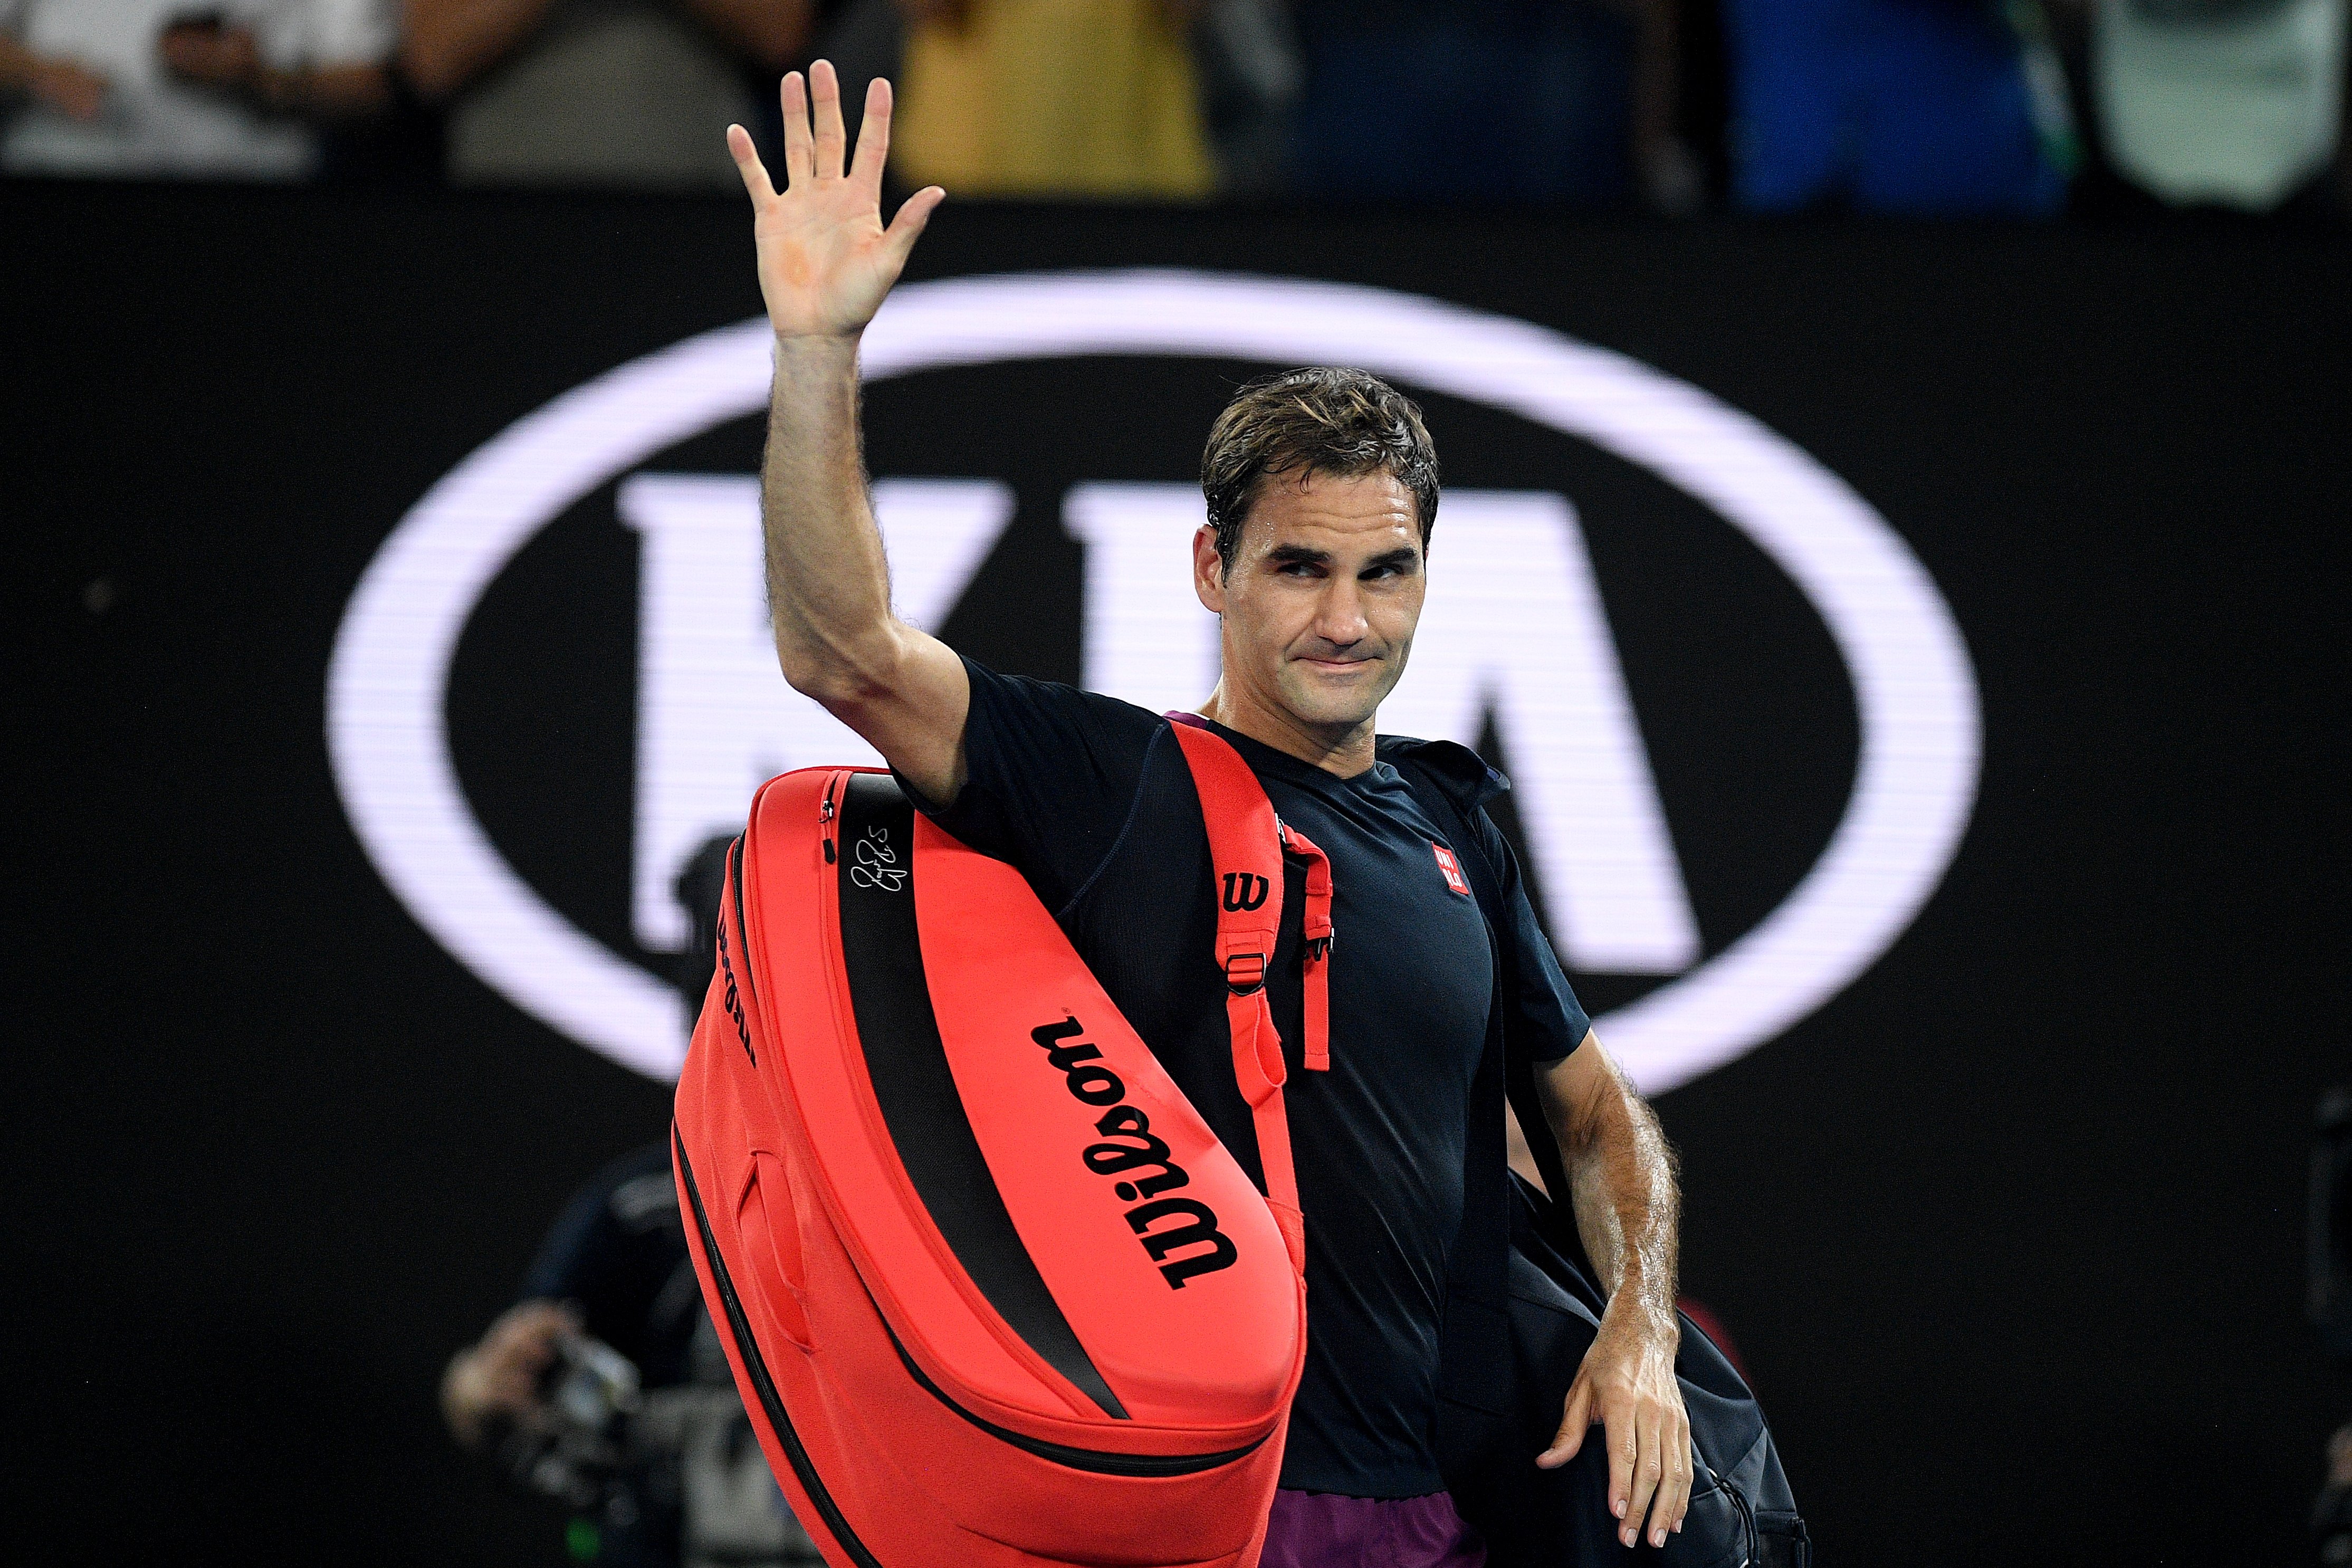 La gran proposta de Federer en el tennis: unir dones i homes